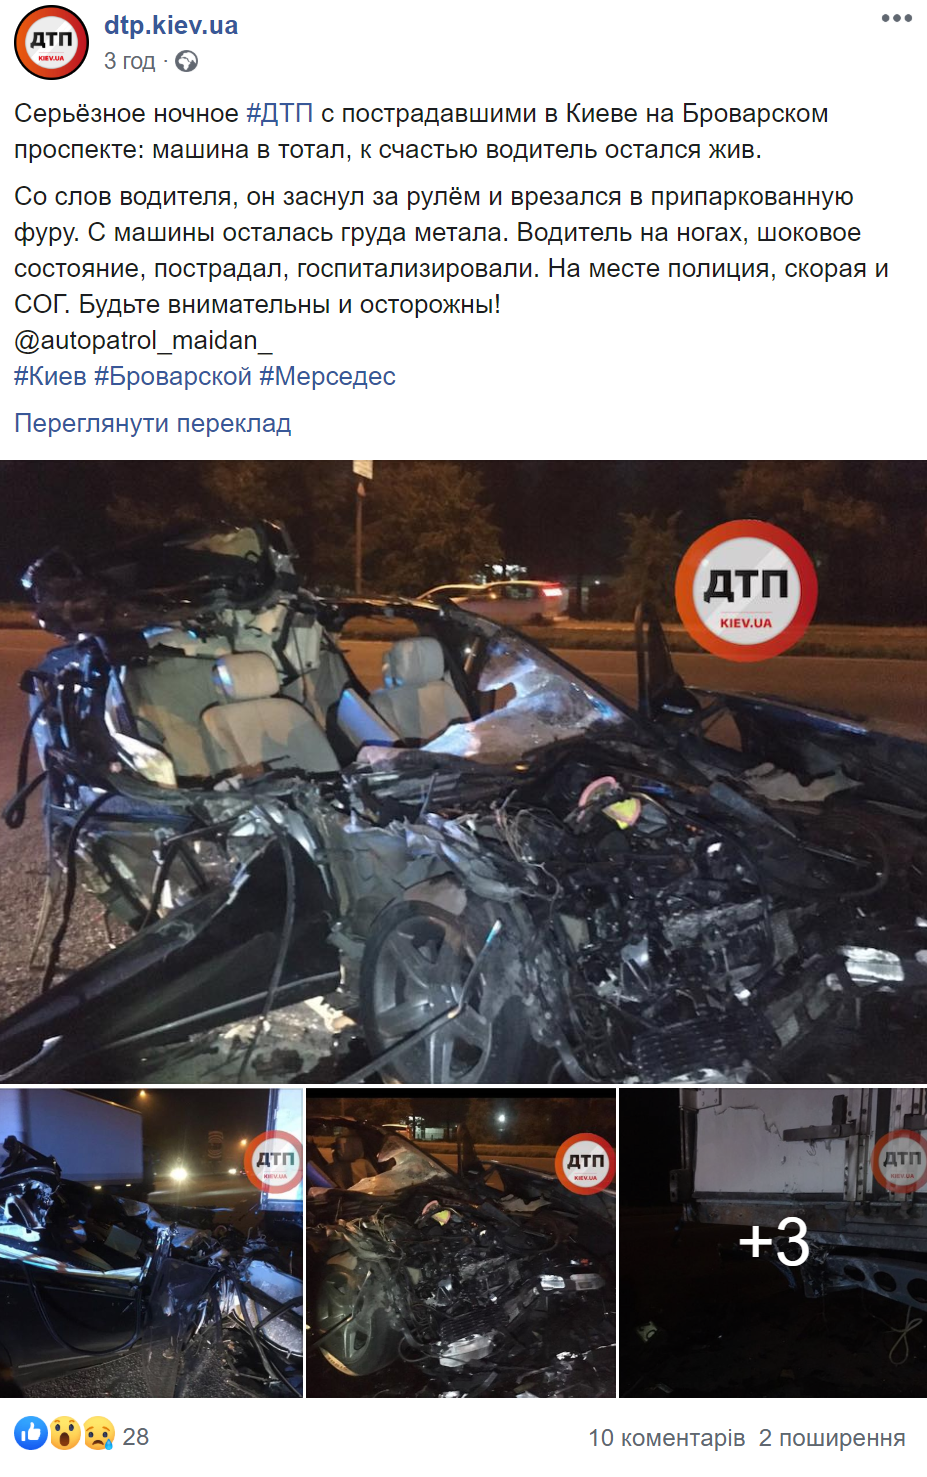 Пост в мережі про ДТП в Києві